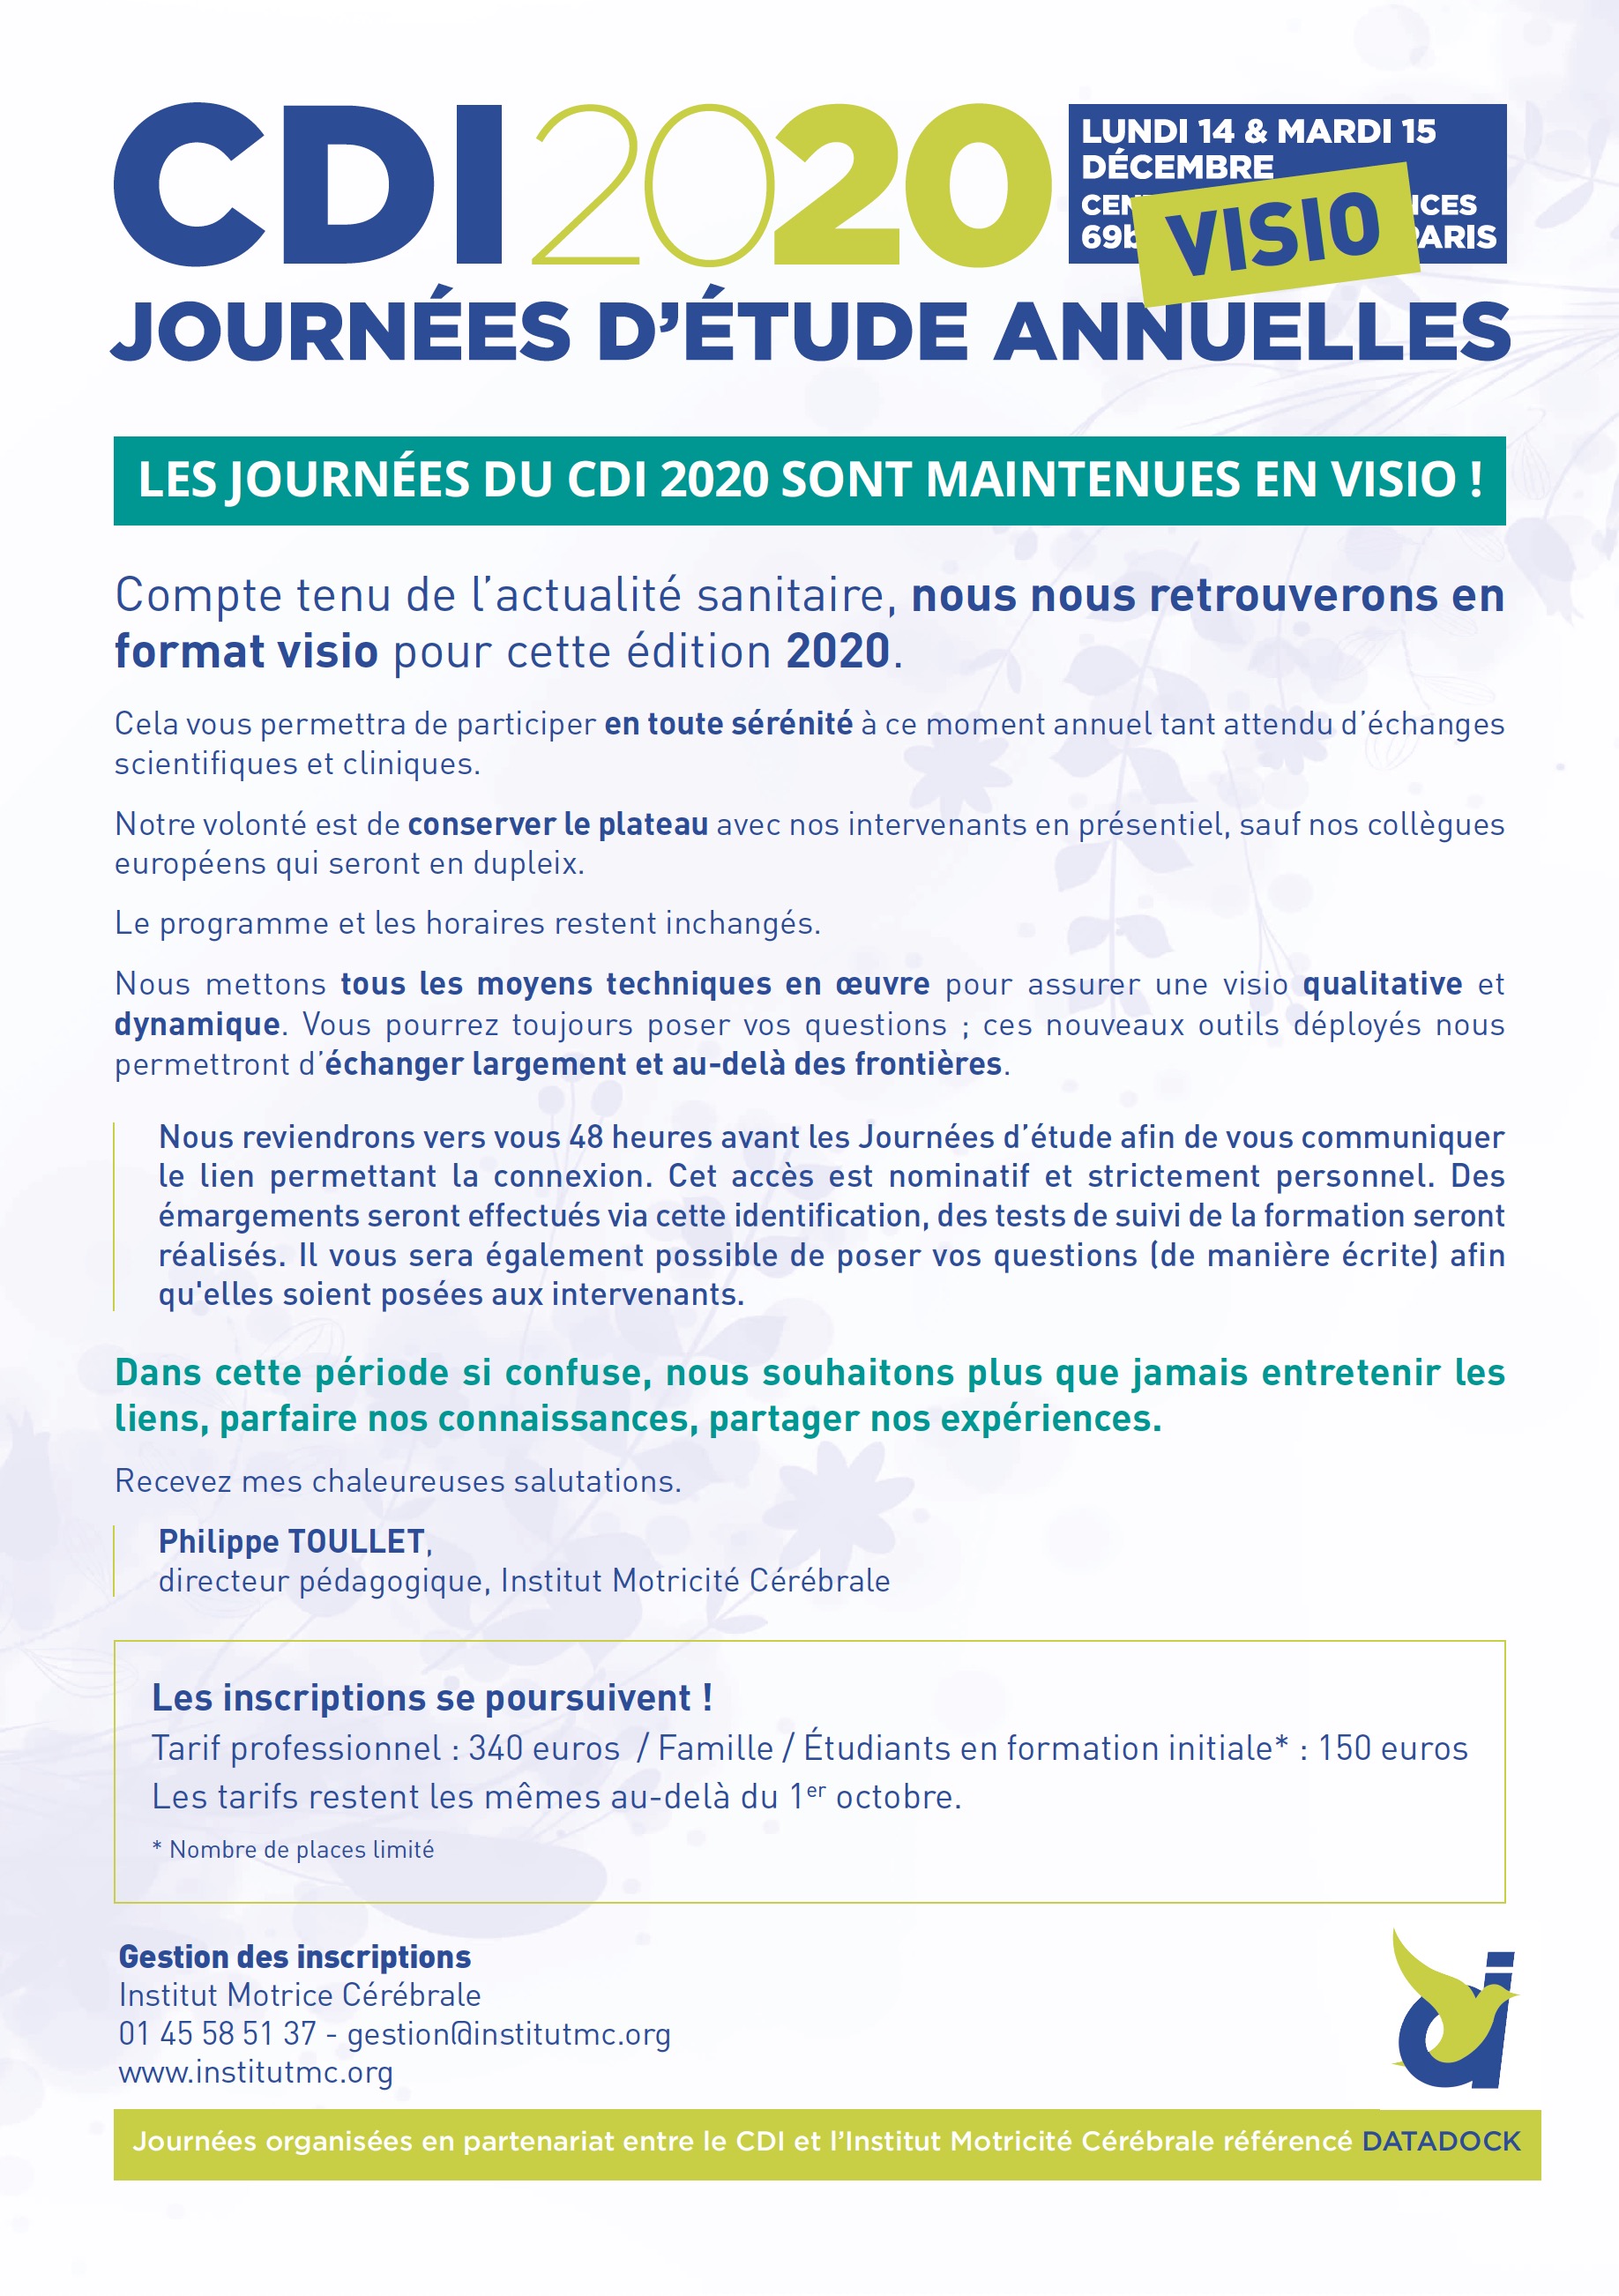 ANNONCE JE CDI Paris 2020